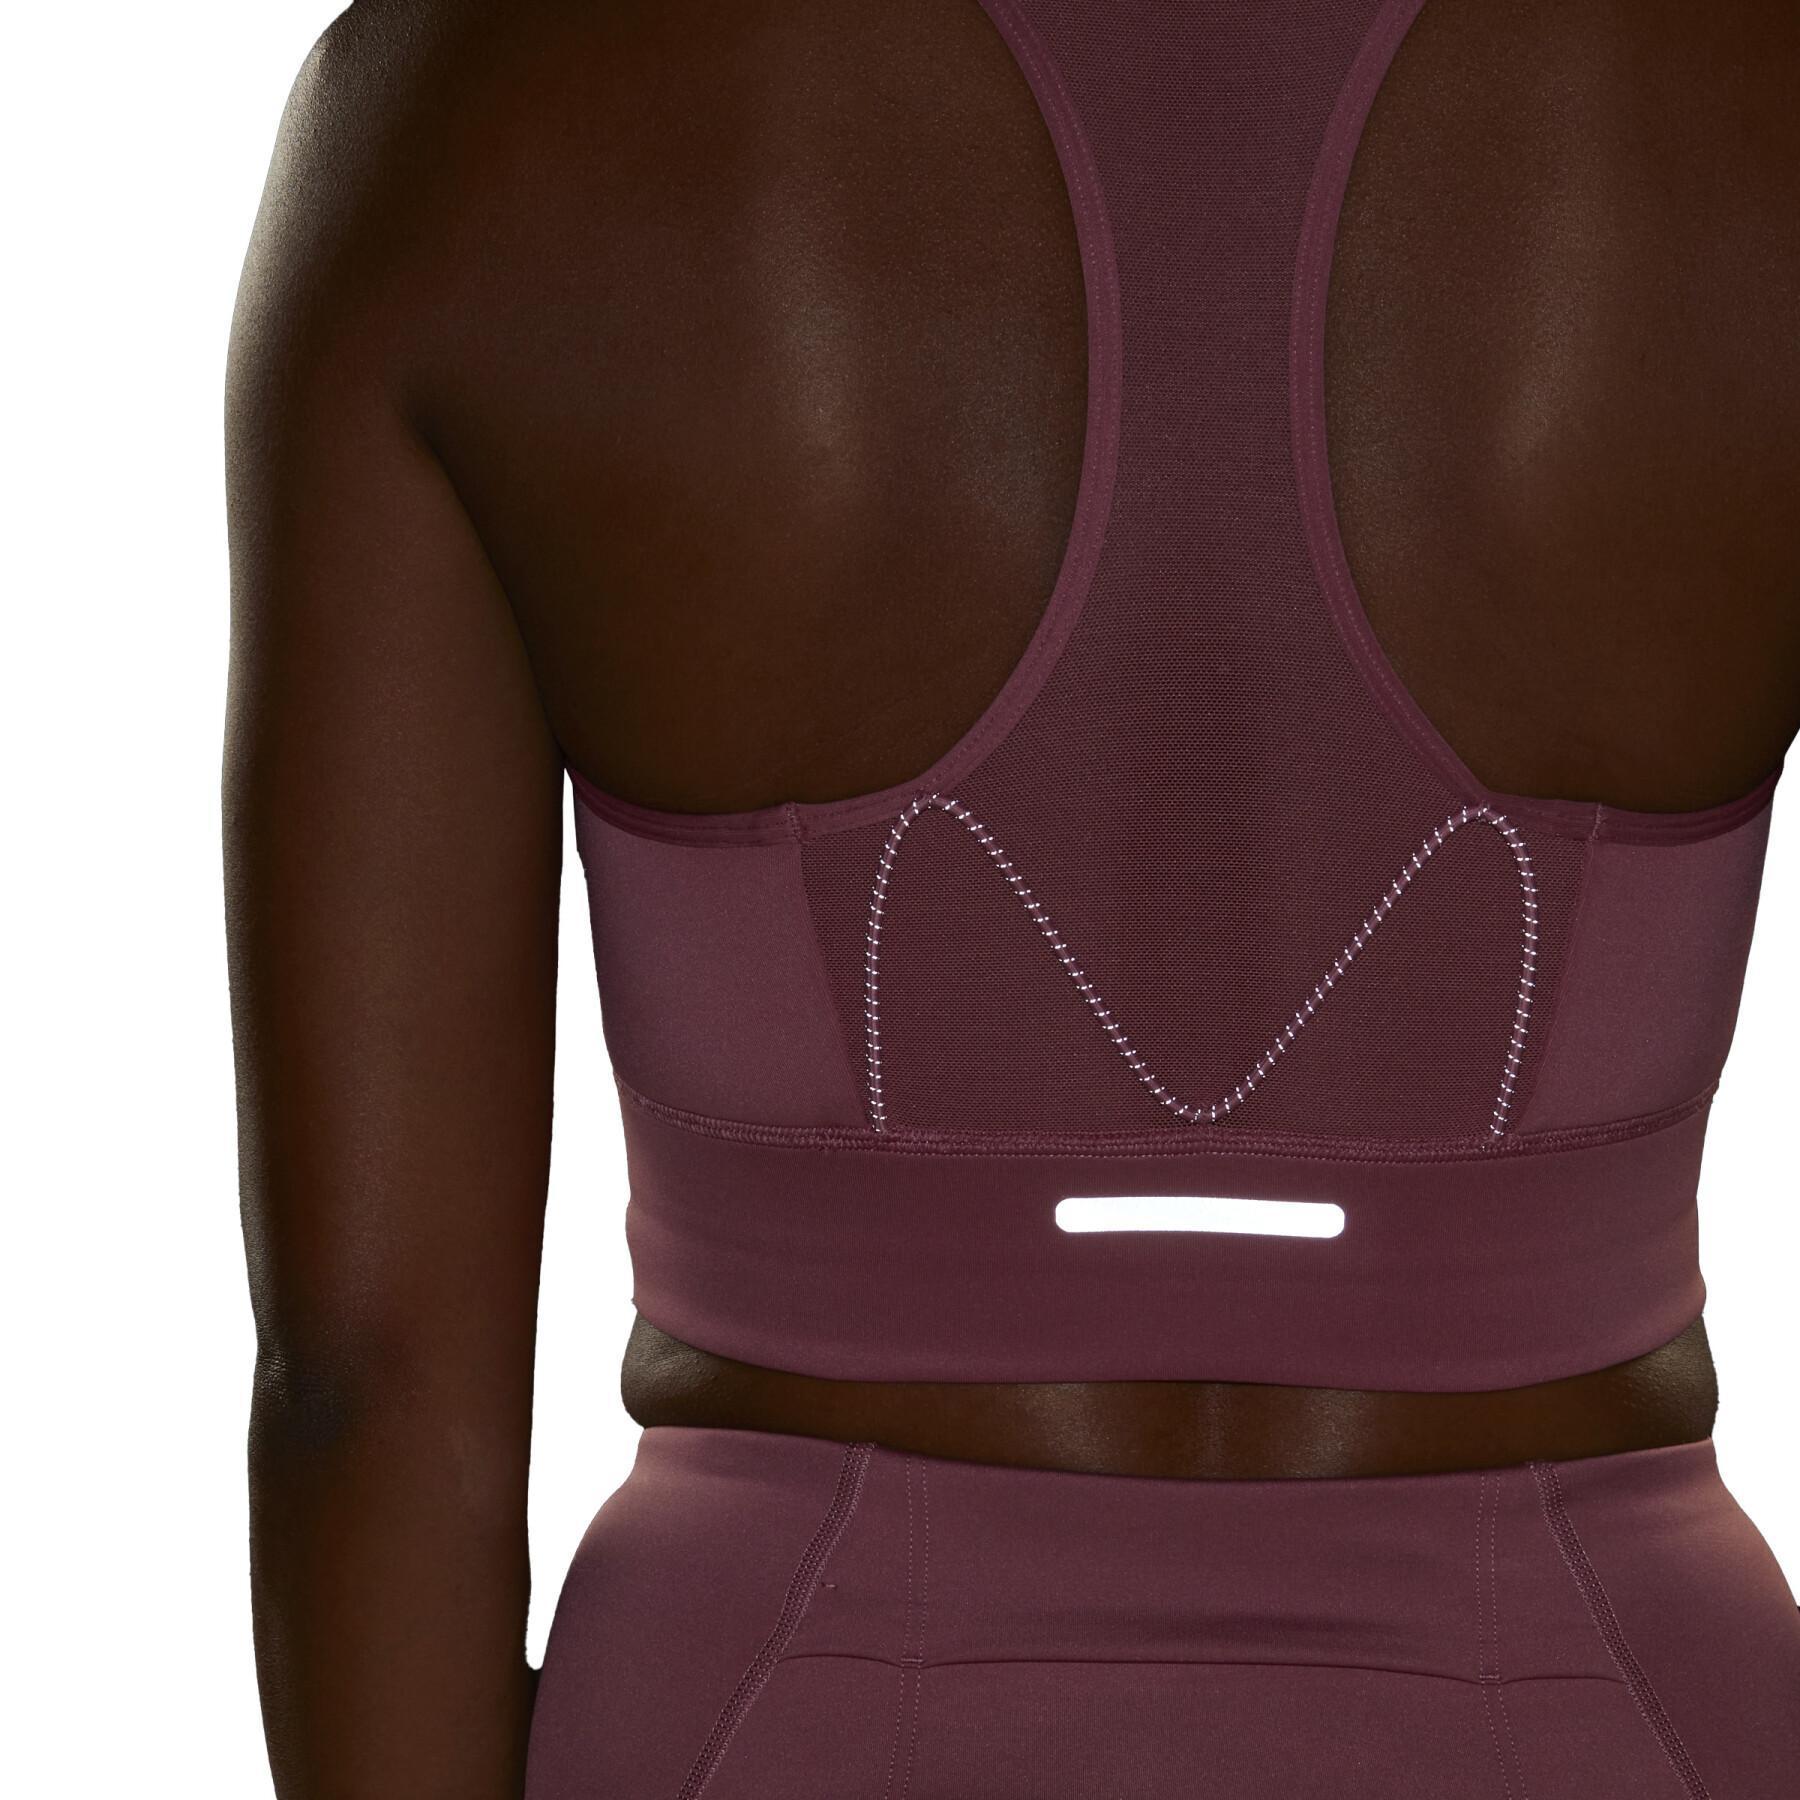 Medium support running bra for women adidas Pocket